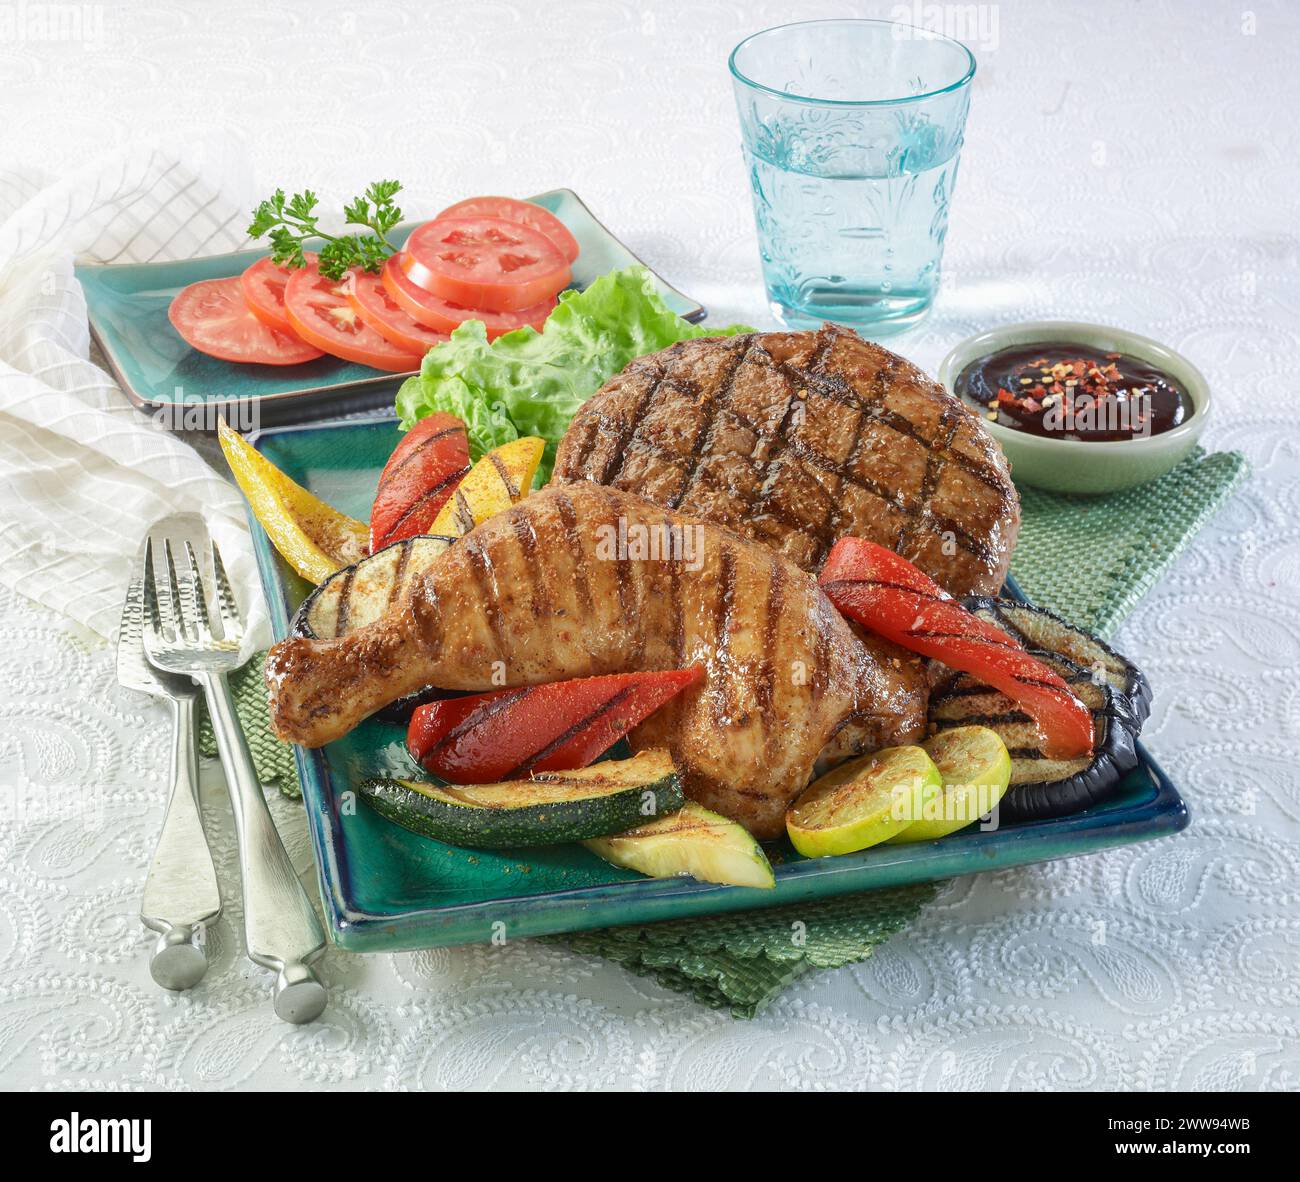 Patty hamburger de poulet et de bœuf grillé avec légumes grillés, sauce piment et tomates Banque D'Images